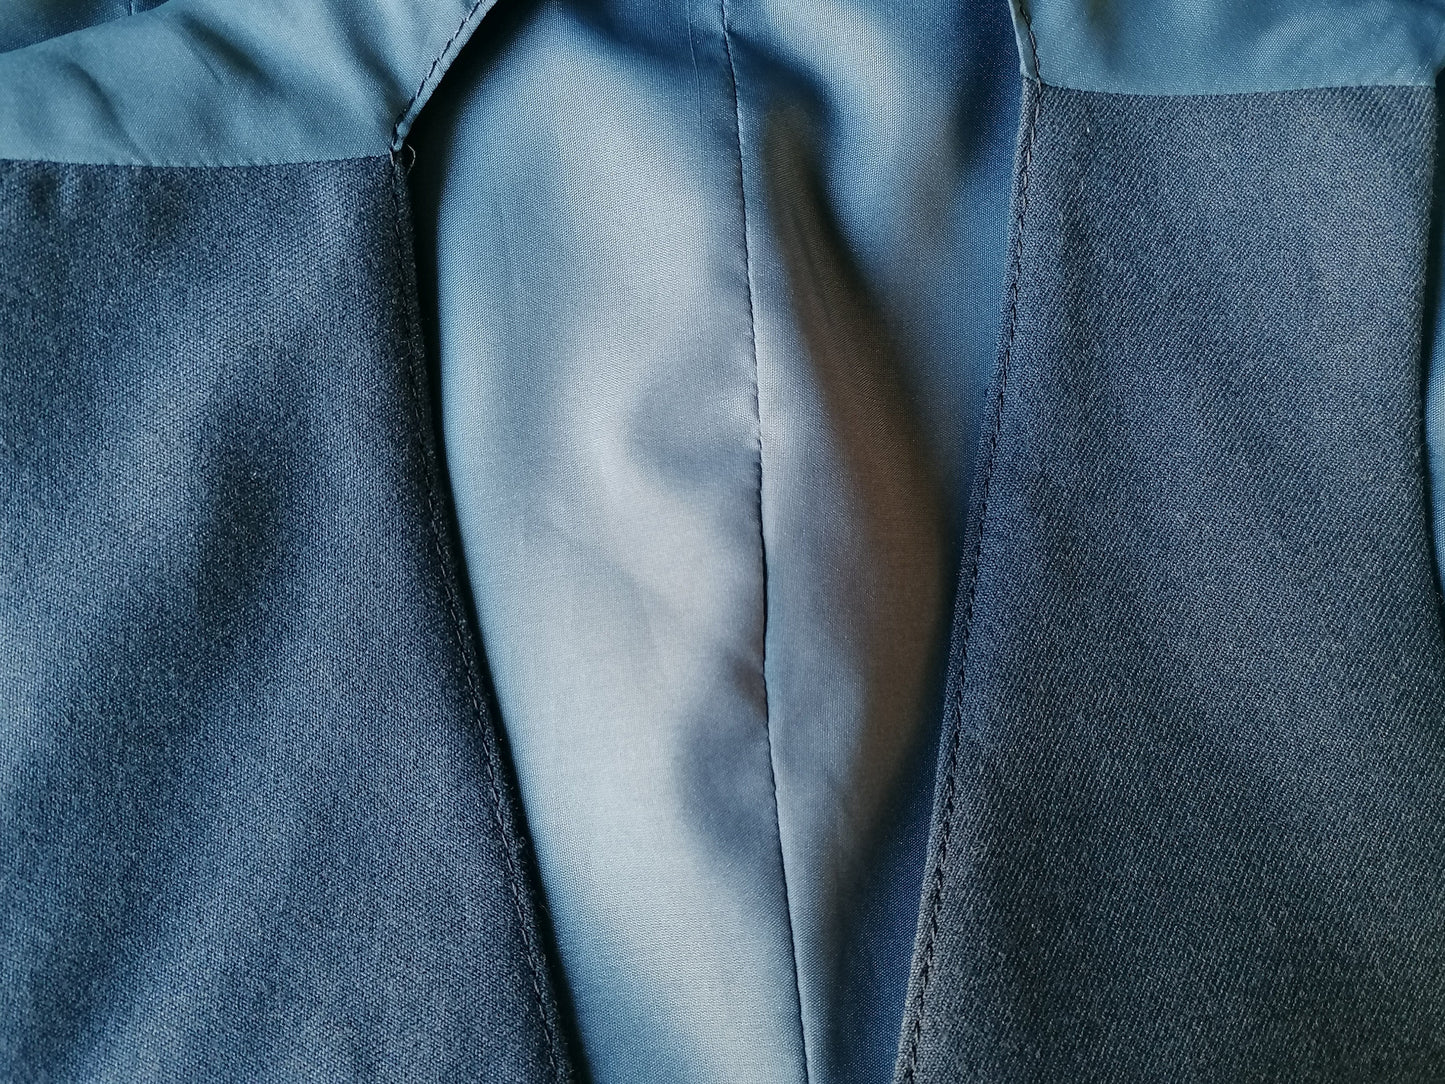 Waistcoat. Blue mixed. Size 48 / S.